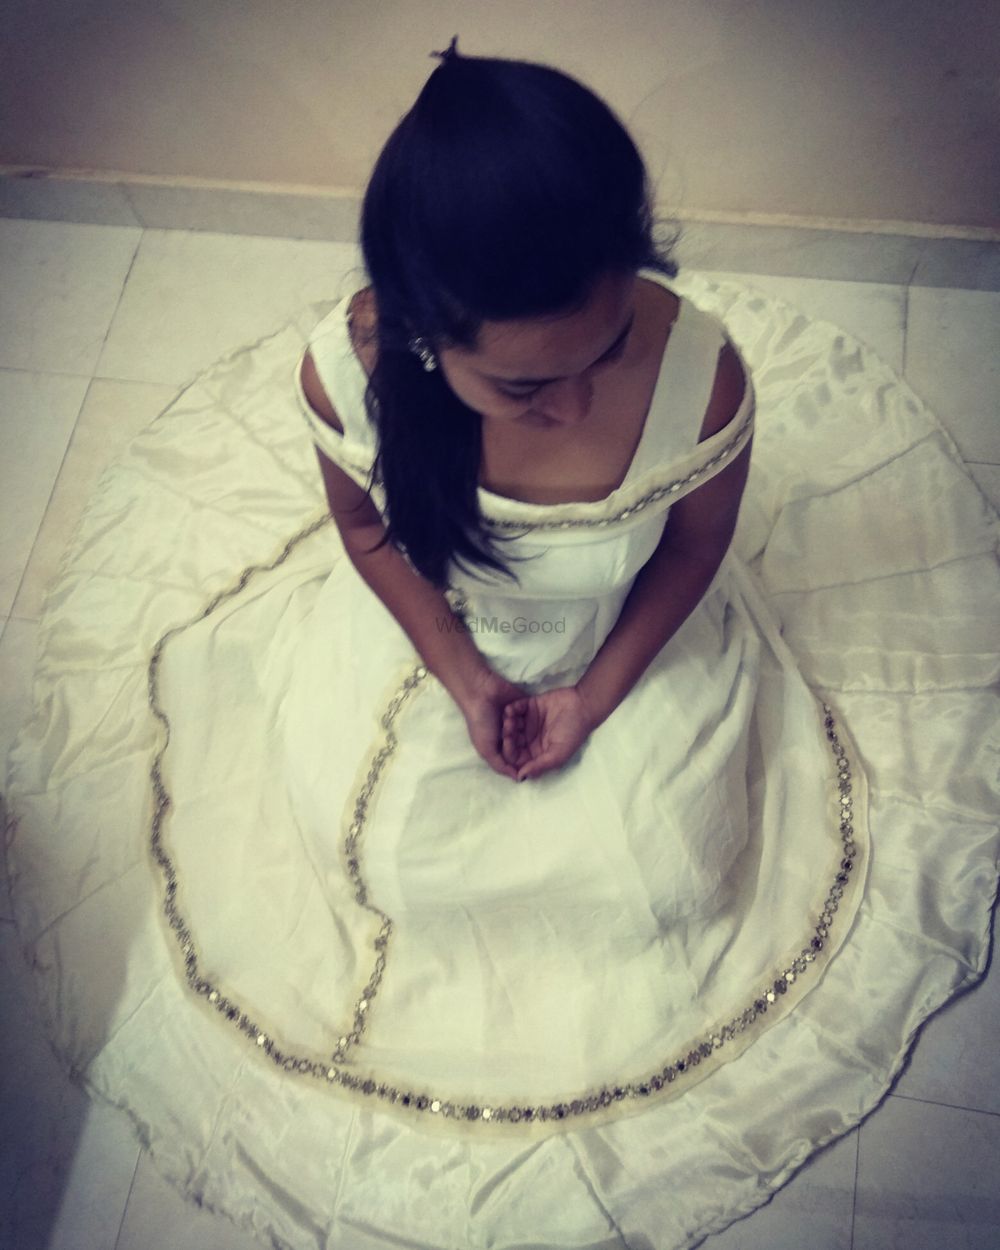 Photo By Aishwarya Hirudkar Designs - Bridal Wear